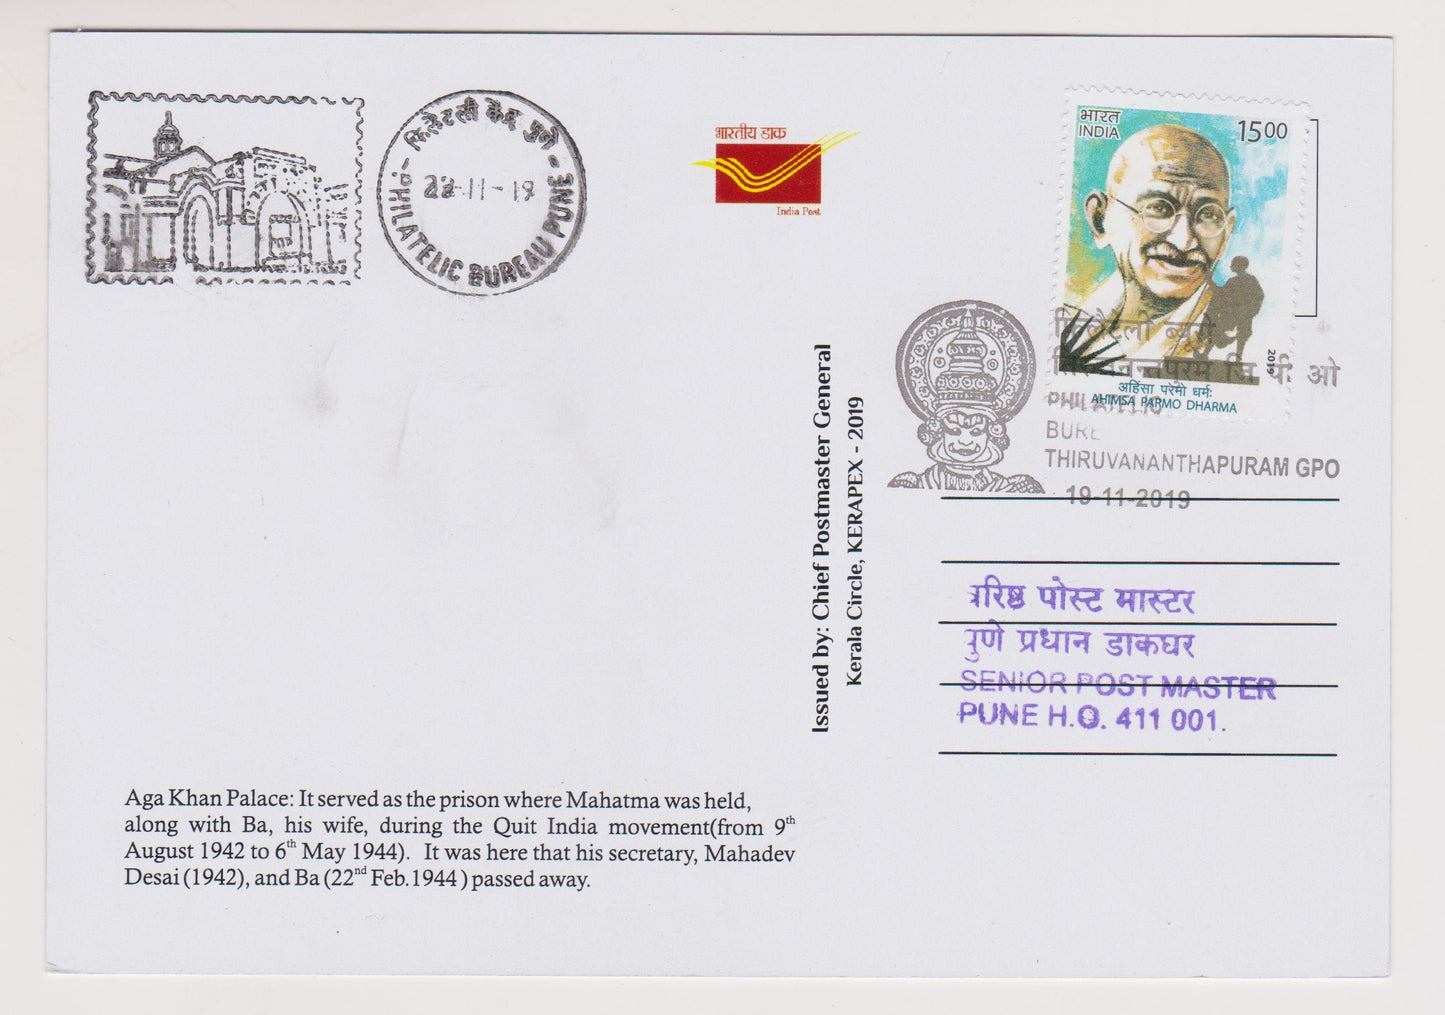 मेरा जीवन मेरा संदेश-त्रिवेंद्रम रद्दीकरण के सचित्र रद्दीकरण के साथ 15 गांधी पोस्टकार्ड का सेट।